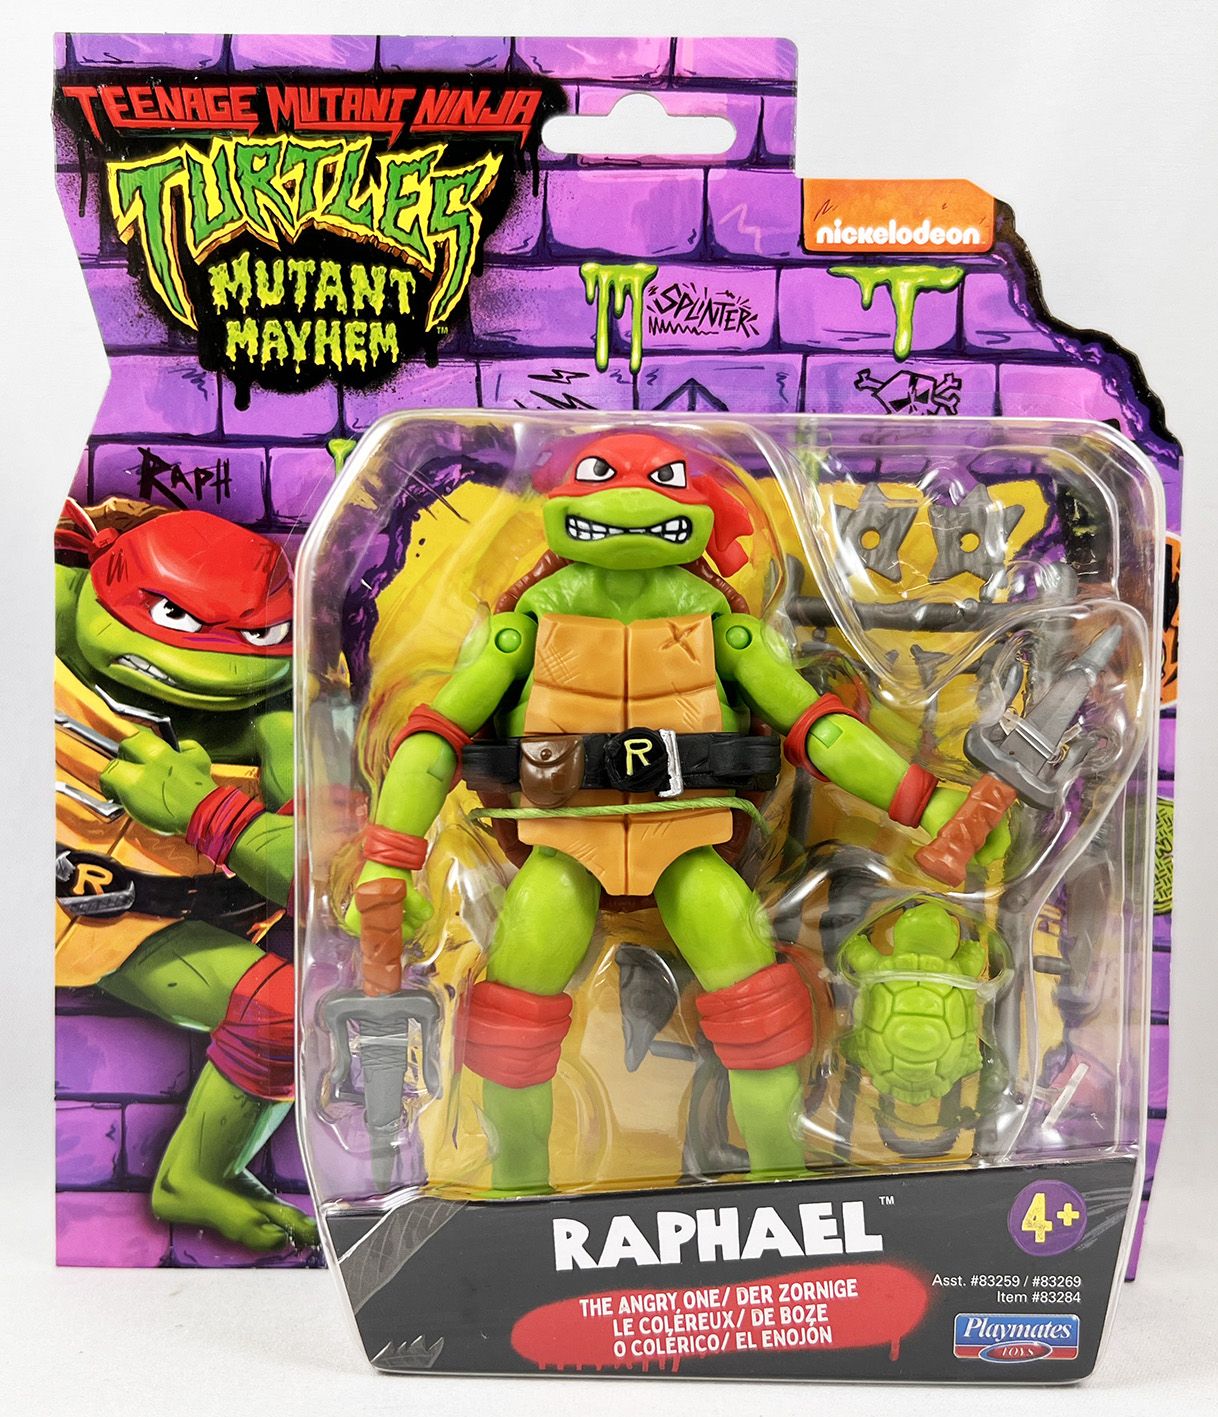 https://www.lulu-berlu.com/upload/image/teenage-mutant-ninja-turtles--mutant-mayhem-movie---playmates---raphael-p-image-508126-grande.jpg